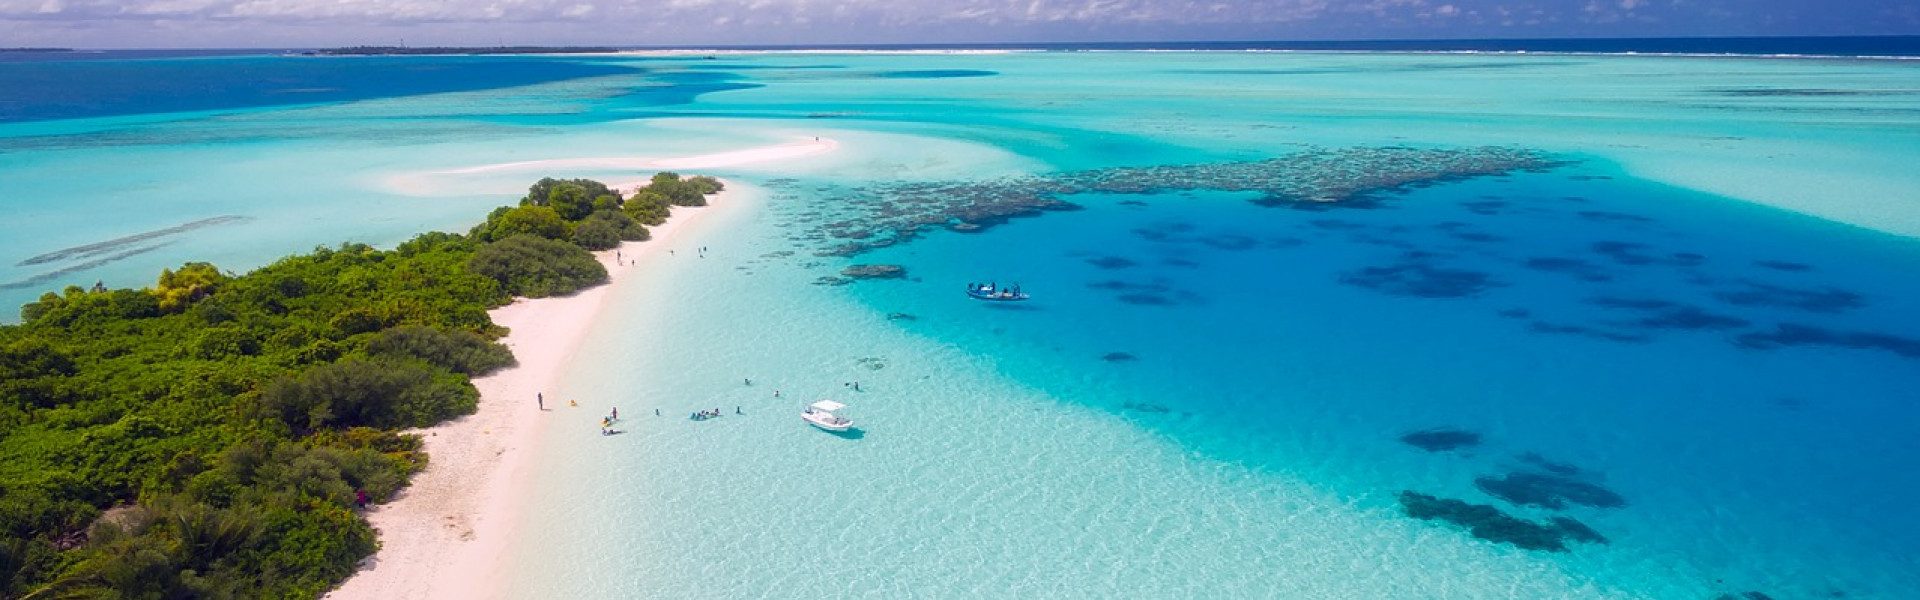 Pourquoi choisir les Maldives pour les vacances d’été ?